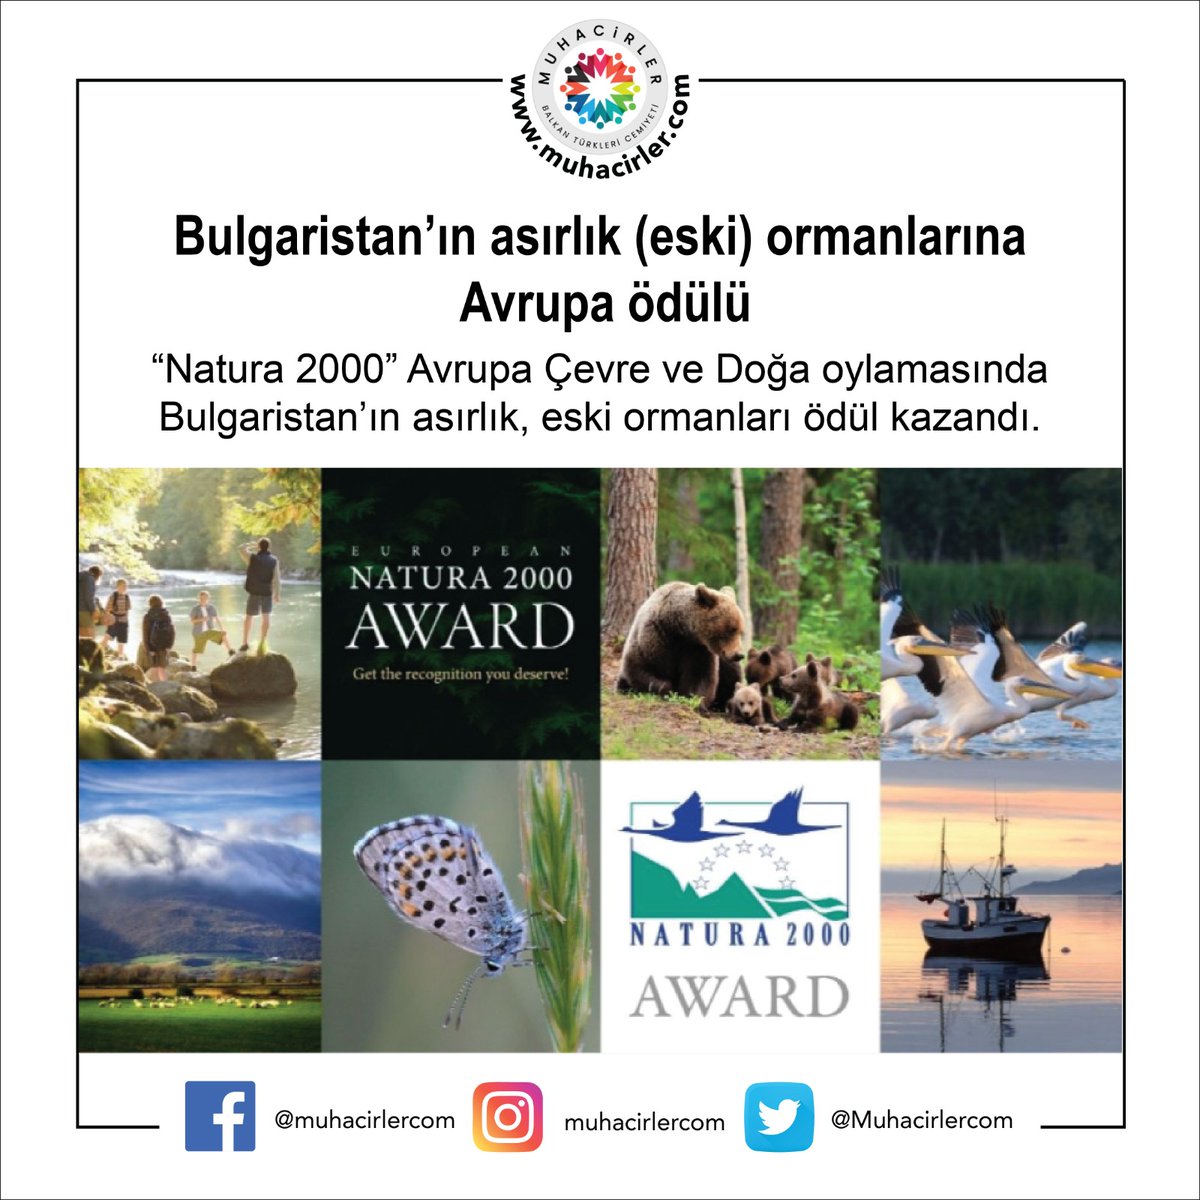 Bulgaristan Asırlık Ormanları AB ve İngiltere’den finale ulaşan 27 başka proje ile boy ölçtü ve en çok onay oyunu almayı başardı. 
#muhacirler #bulgaristan #balkangöçmenleri #Natura2000Awards #Natura2000